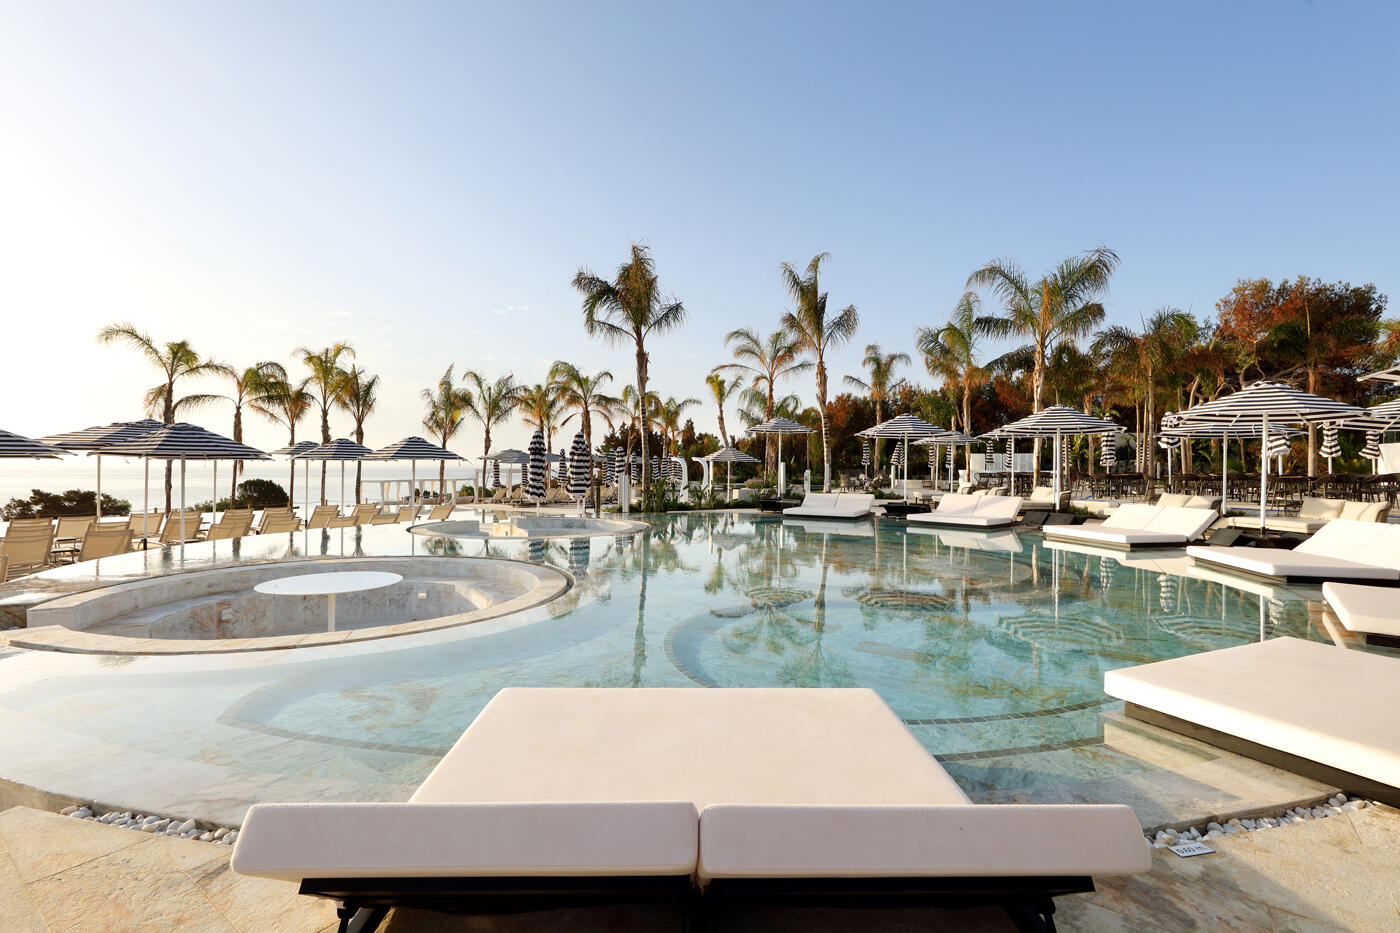 Runder Pool mit weißen Liegestühlen drumherum. Im Hintergrund stehen Palmen und man sieht das Meer.